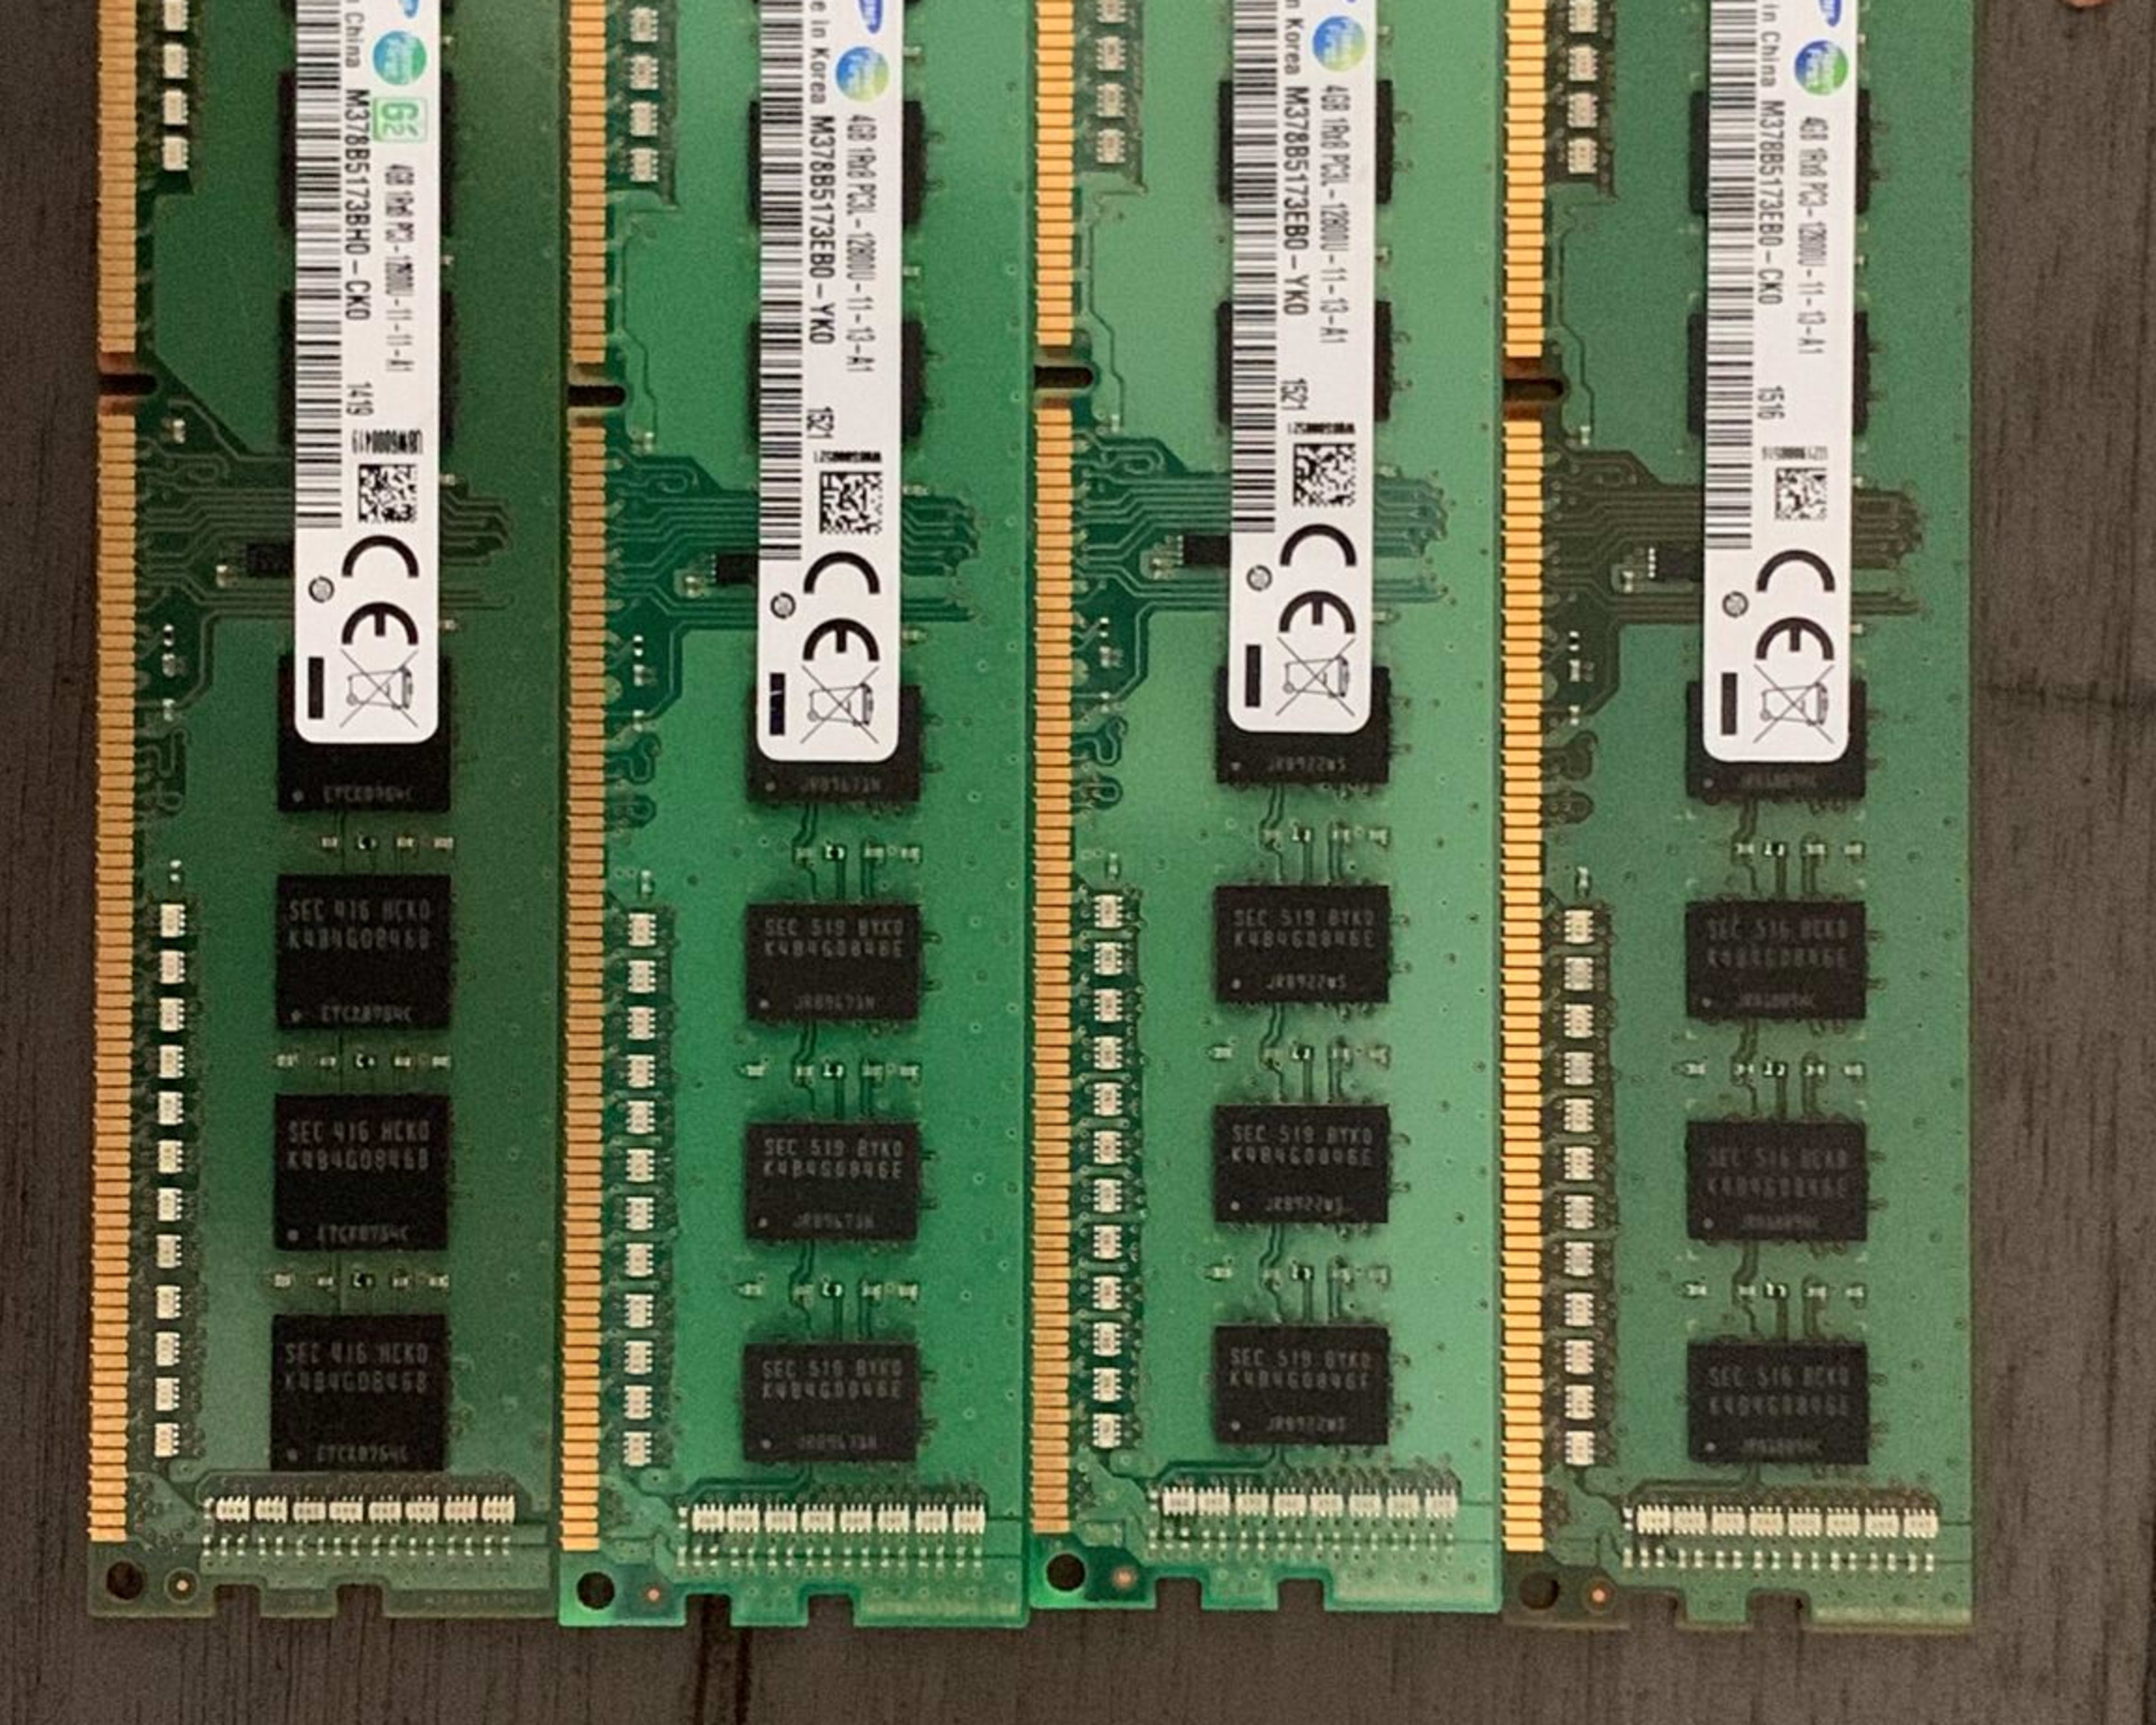 Lexar Hades RGB 16Go (2x8Go) DDR4 3600MHz - Mémoire PC Lexar sur